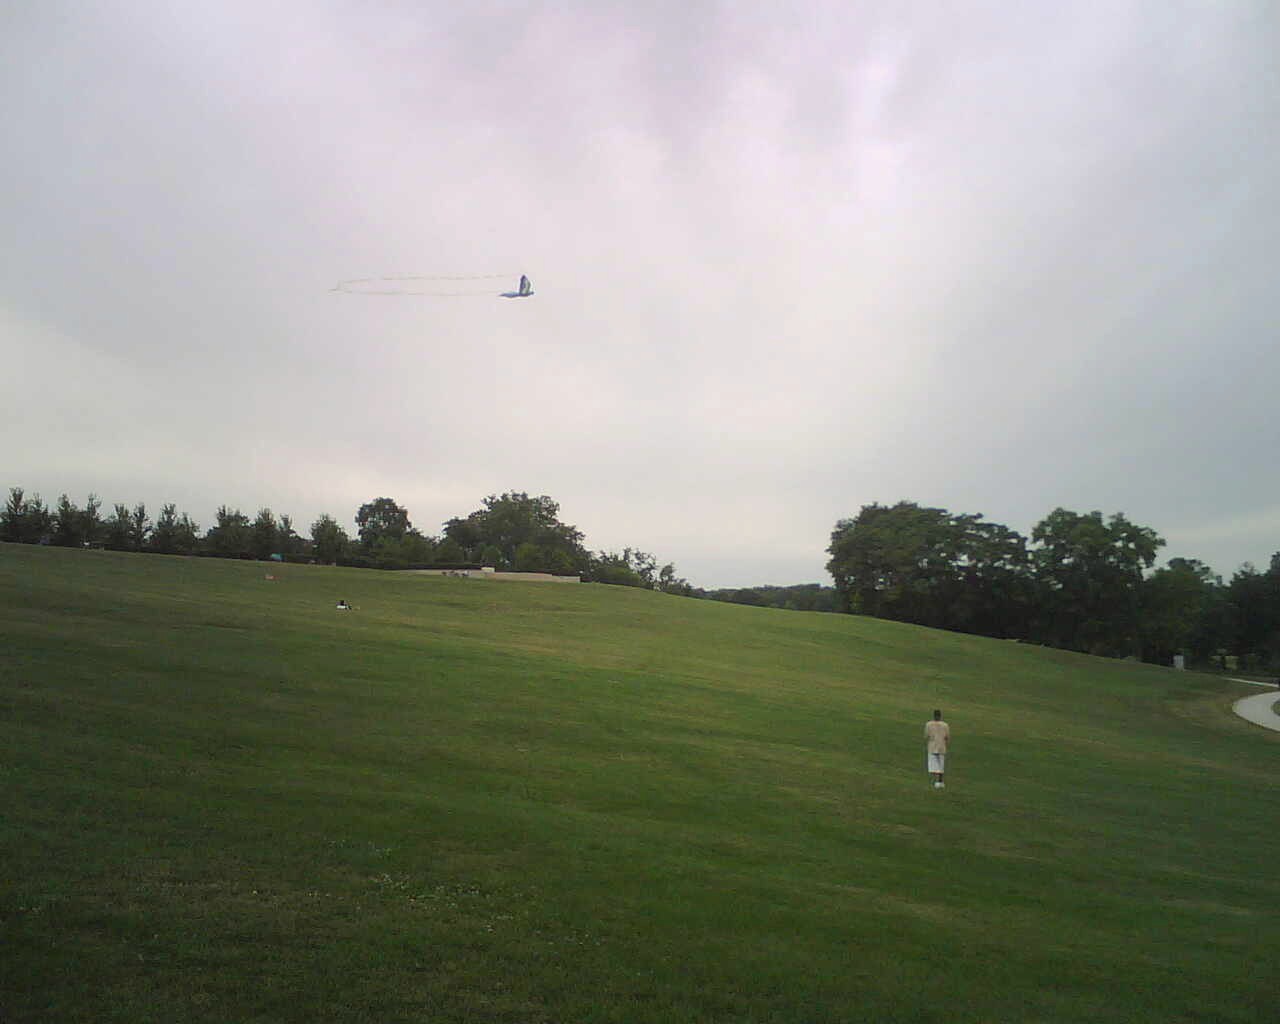 kite-flying